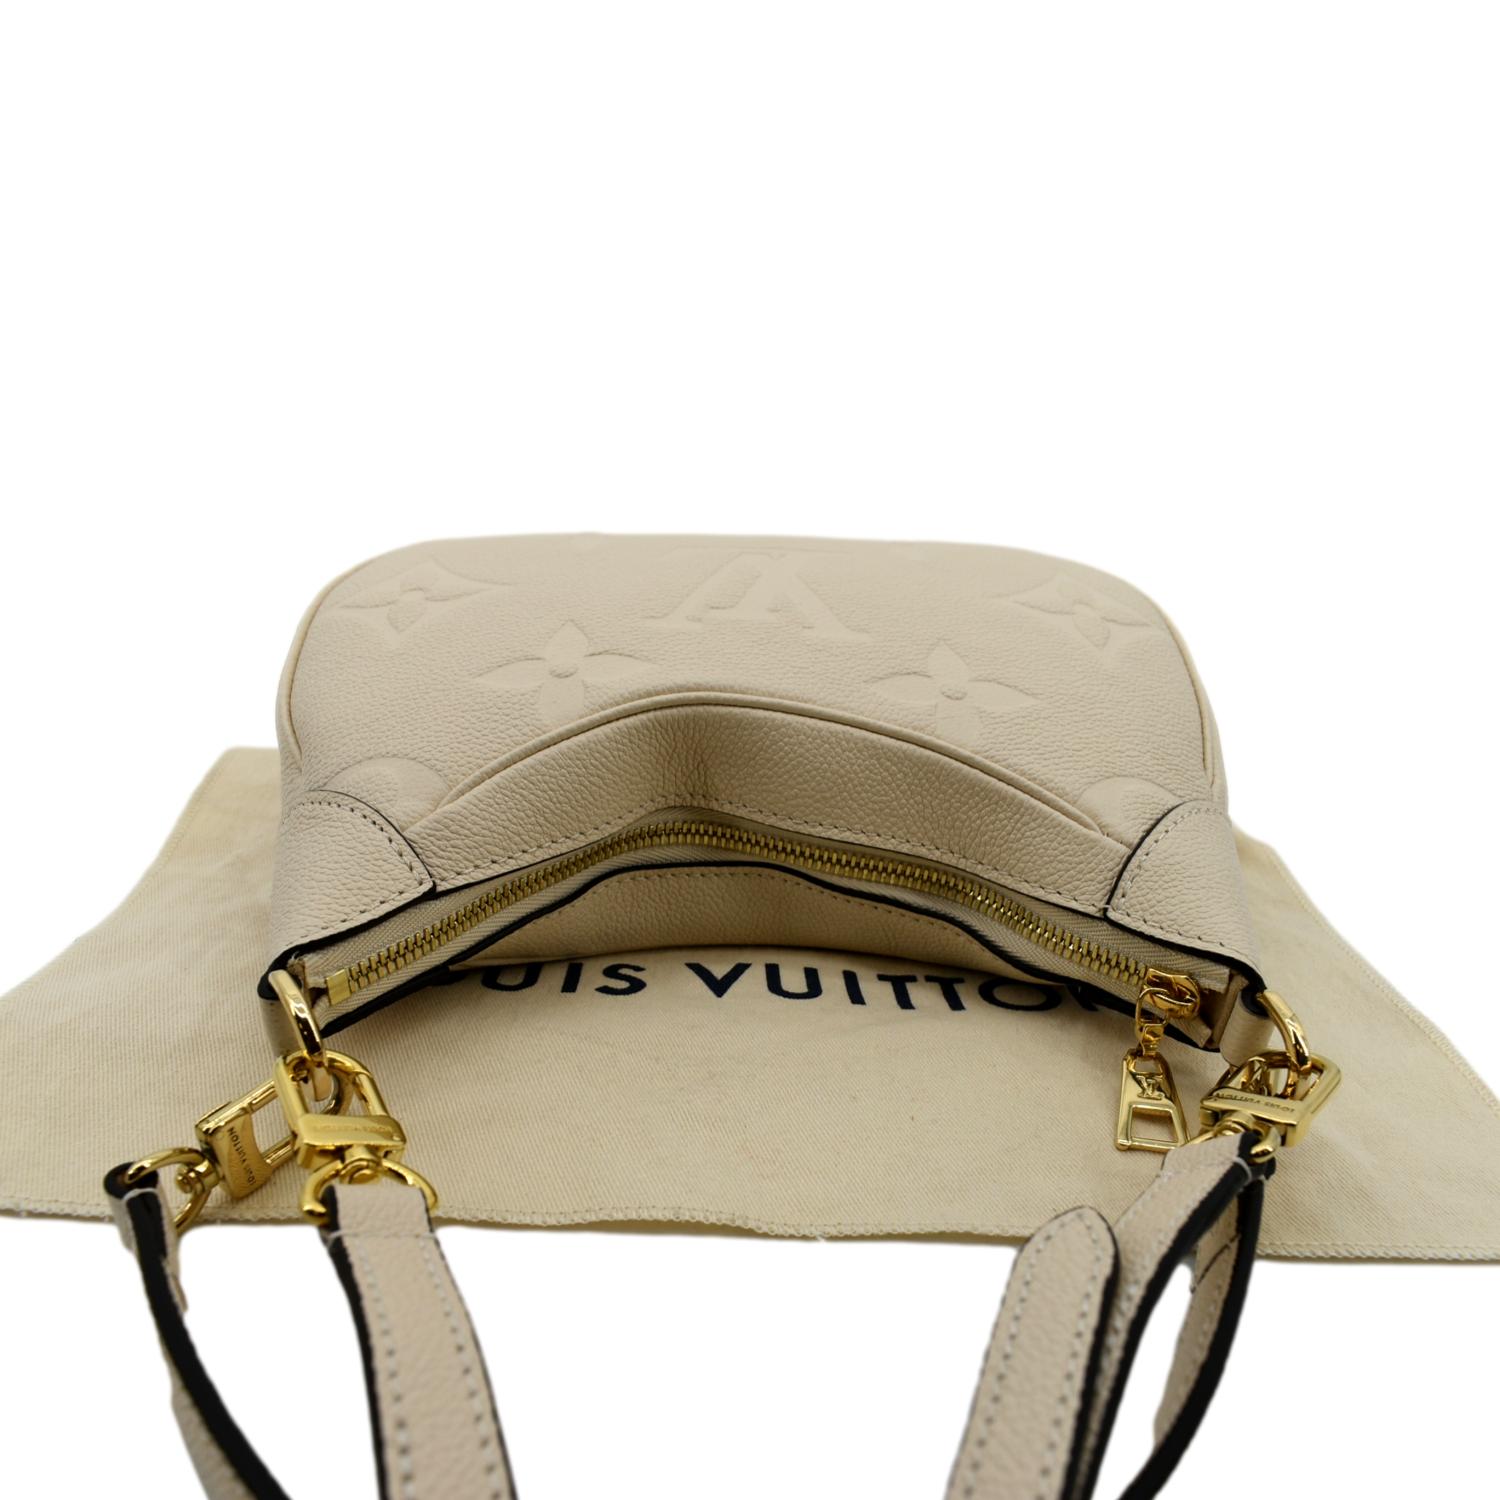 JLL Bags & etc. - Brand: Louis Vuitton Color: Beige